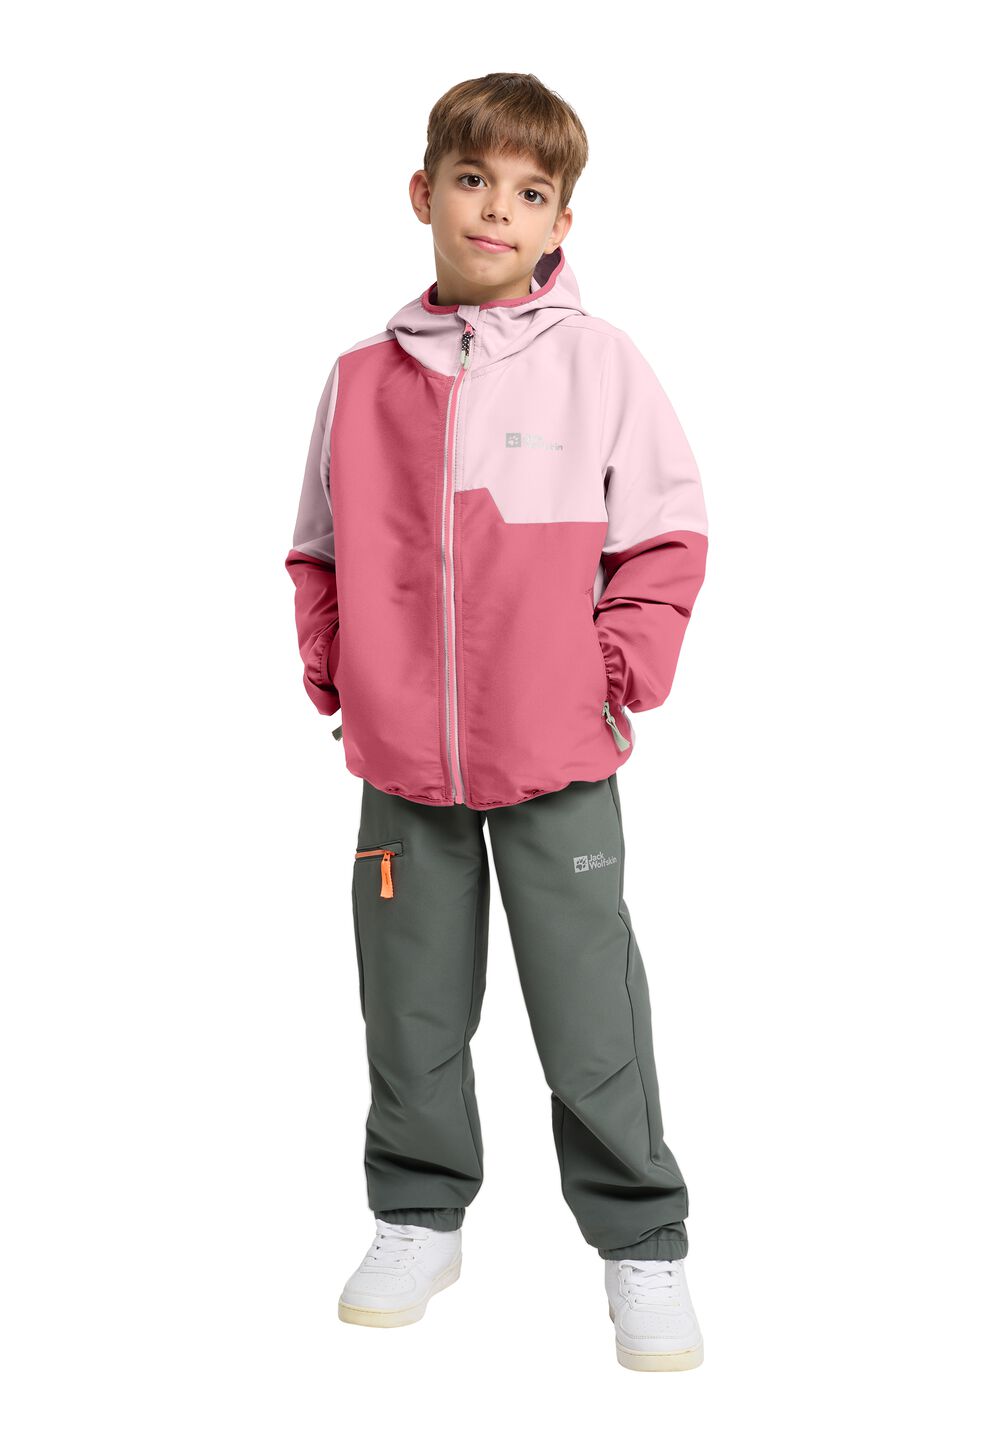 Jack Wolfskin Turbulence Hooded Jacket Kids Softshelljack Kinderen 140 soft pink soft pink